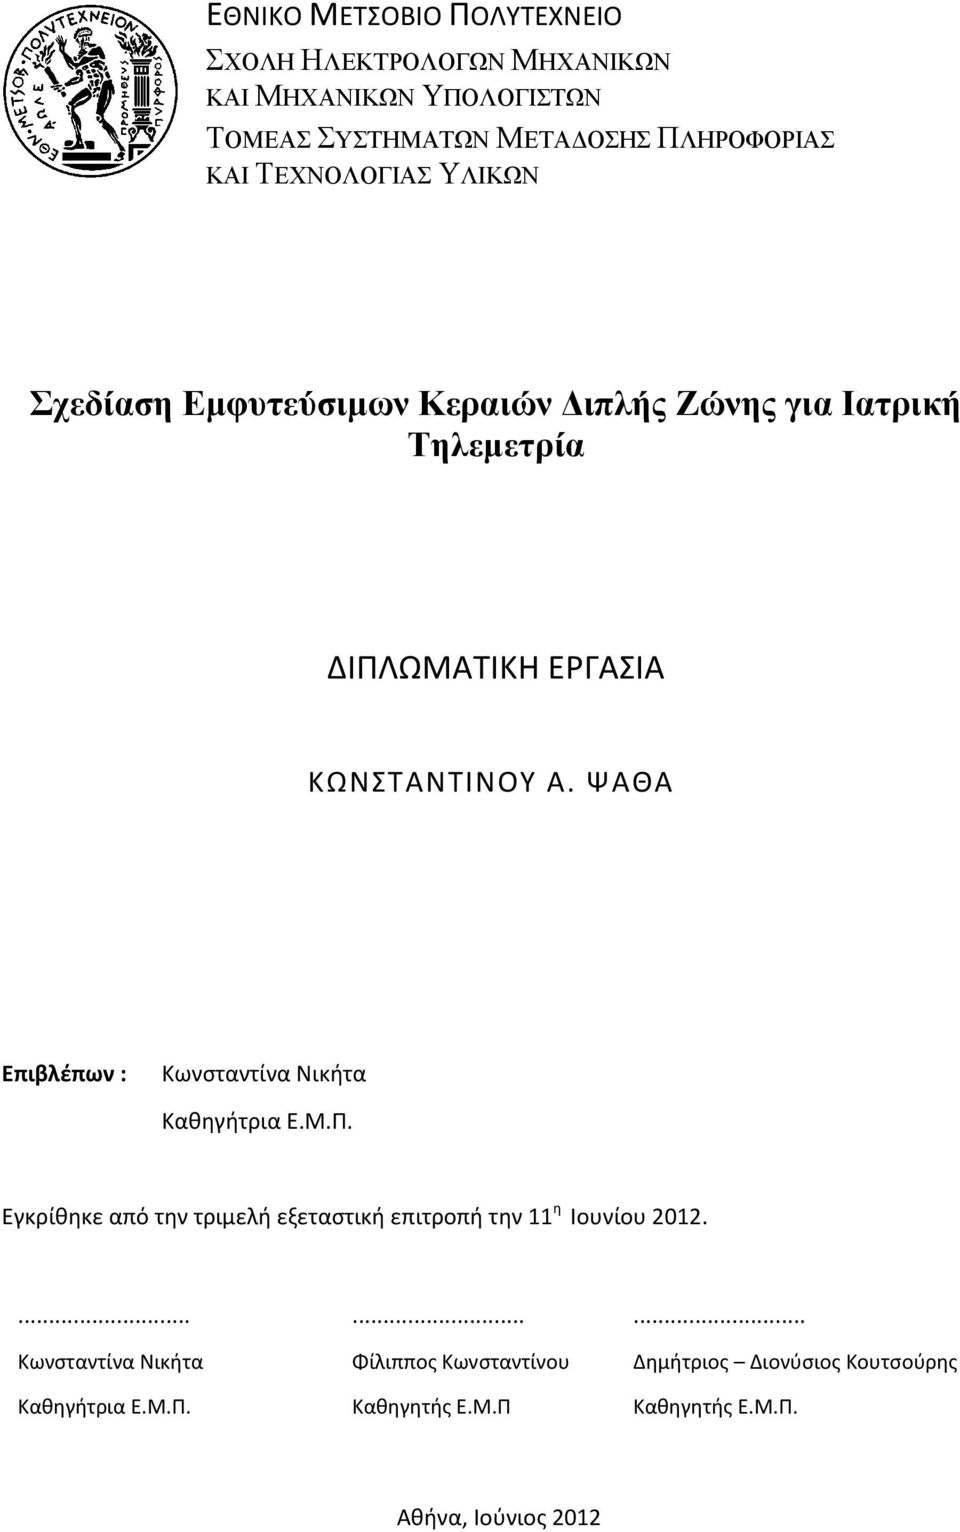 ΨΑΘΑ Επιβλέπων : Κωνσταντίνα Νικήτα Καθηγήτρια Ε.Μ.Π. Εγκρίθηκε από την τριμελή εξεταστική επιτροπή την 11 η Ιουνίου 2012.